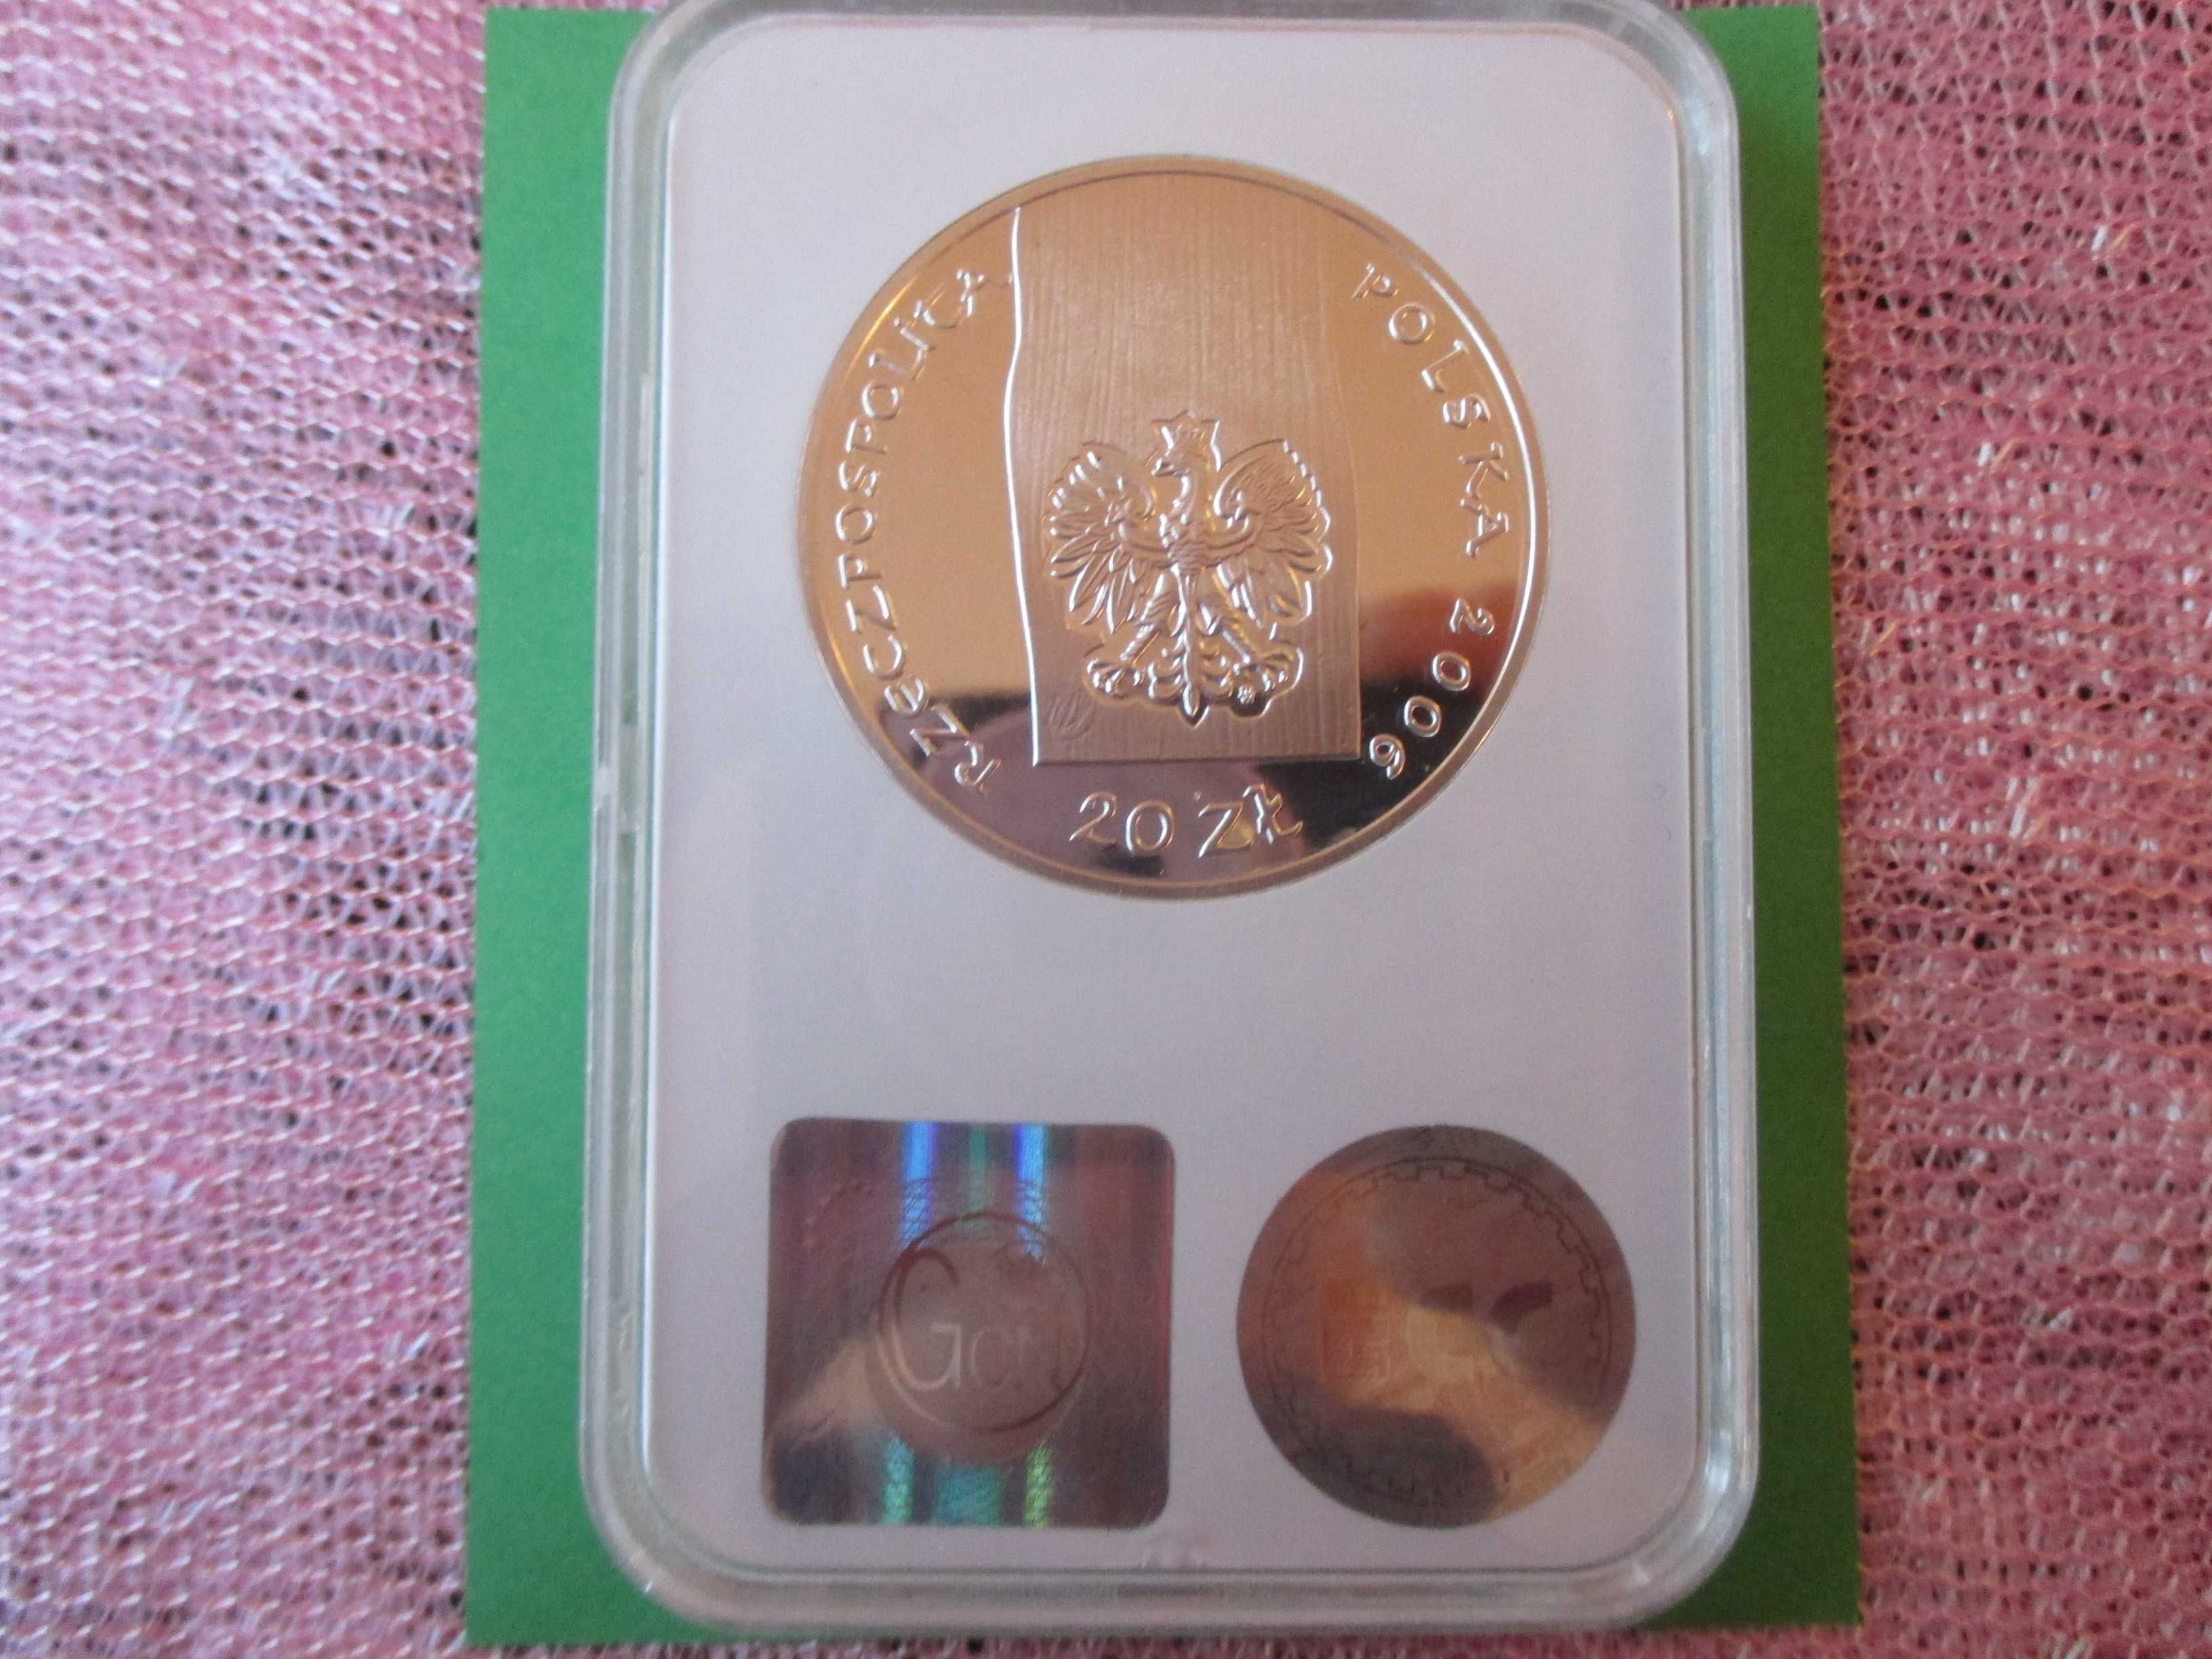 Srebrna moneta 20 zł z 2006 r. w gradingu